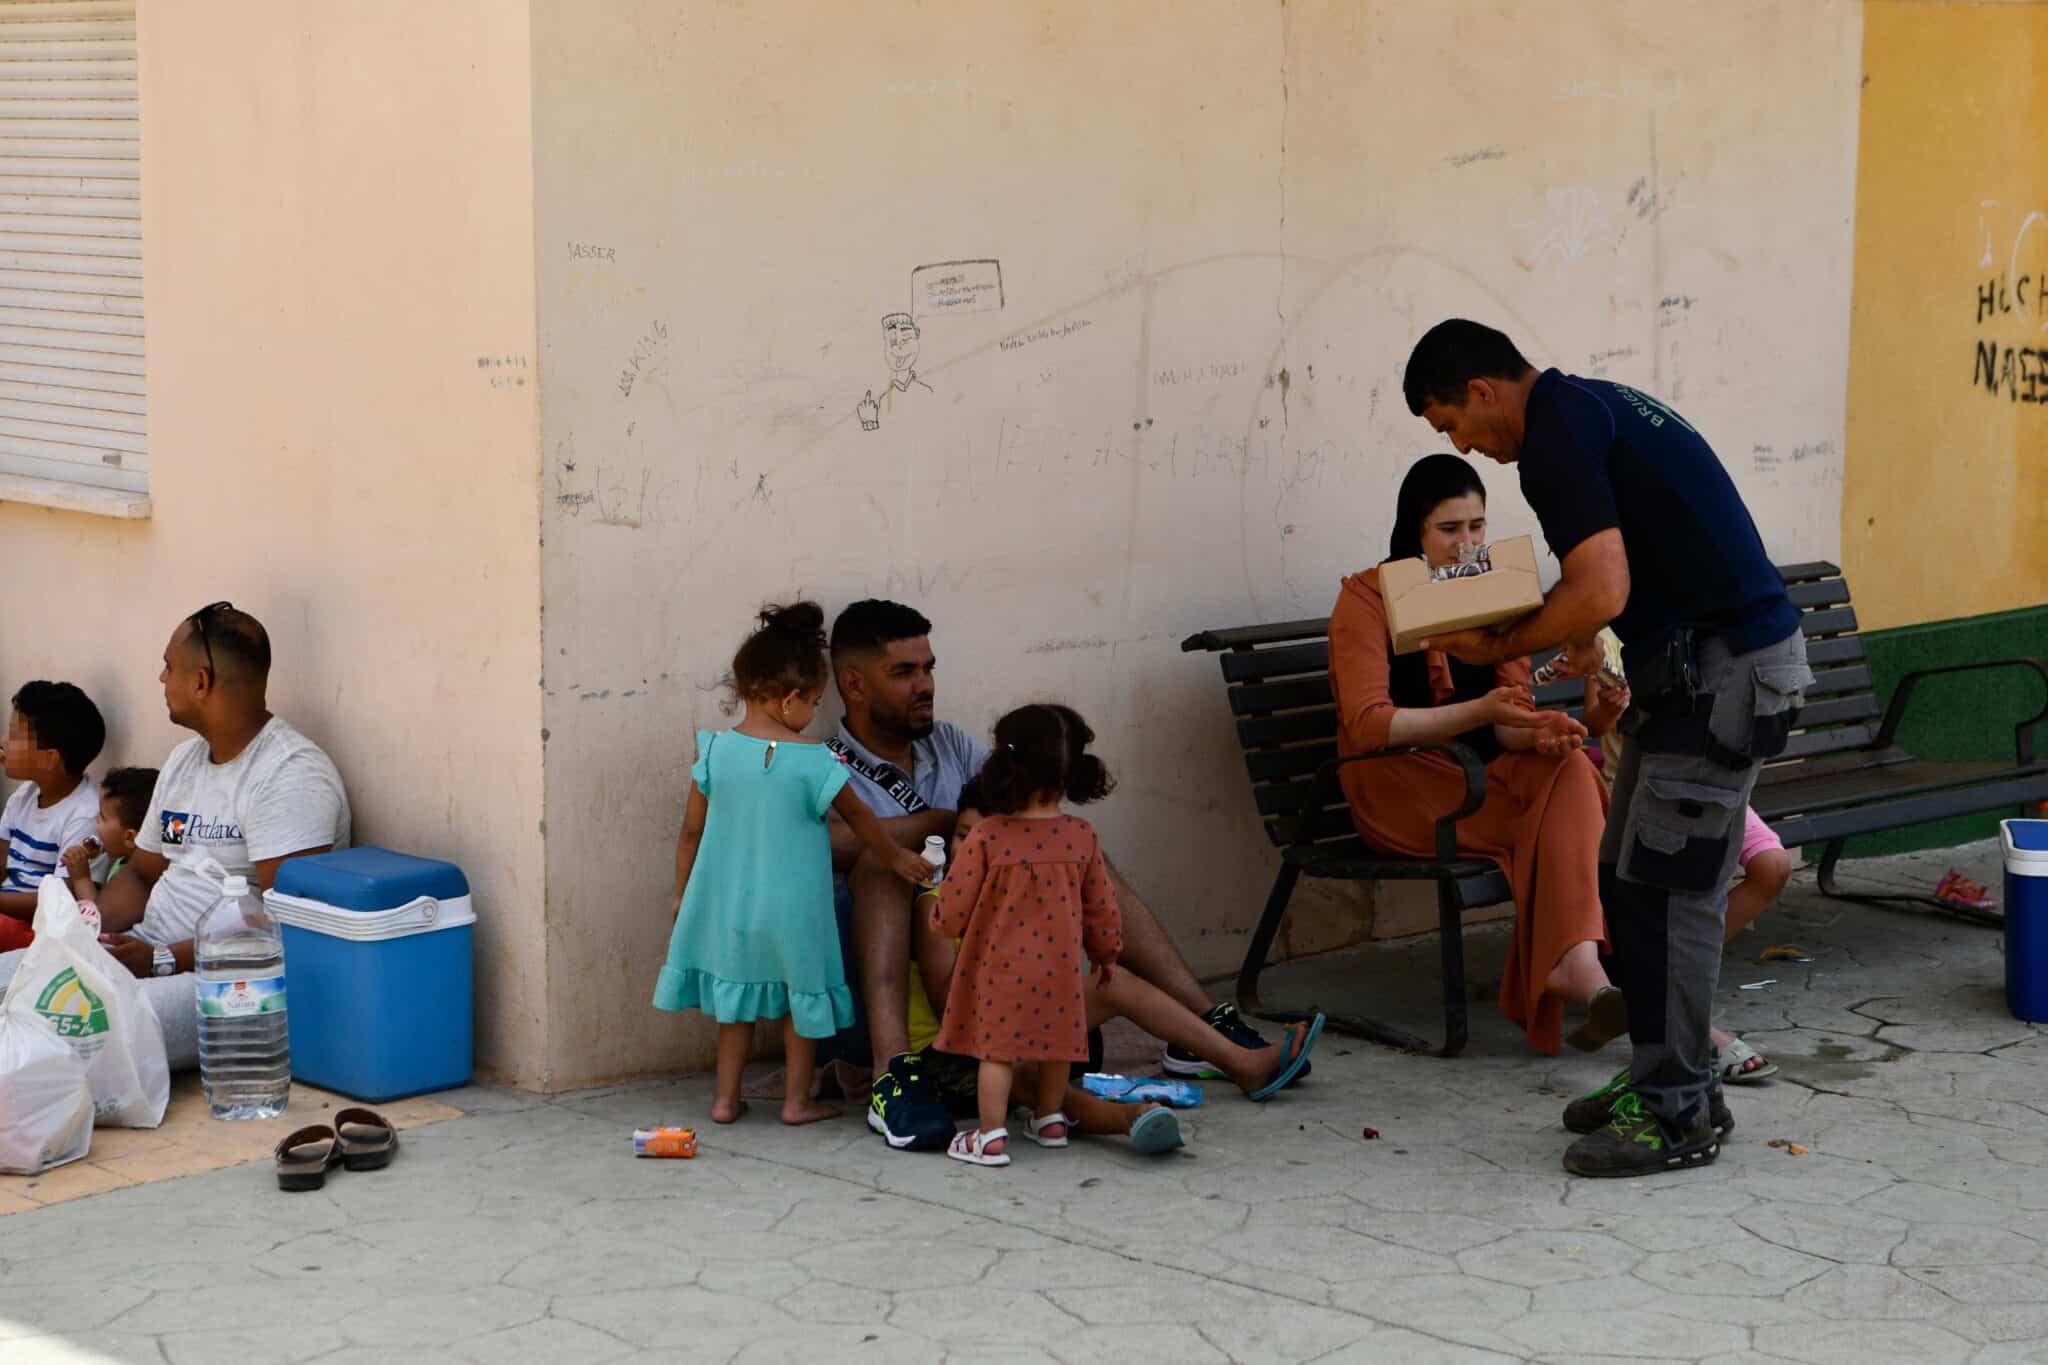 Varias personas reciben agua y alimento en la zona de embolsamiento de Loma Colmenar para pasar por la frontera del Tarajal, de Ceuta a Marruecos